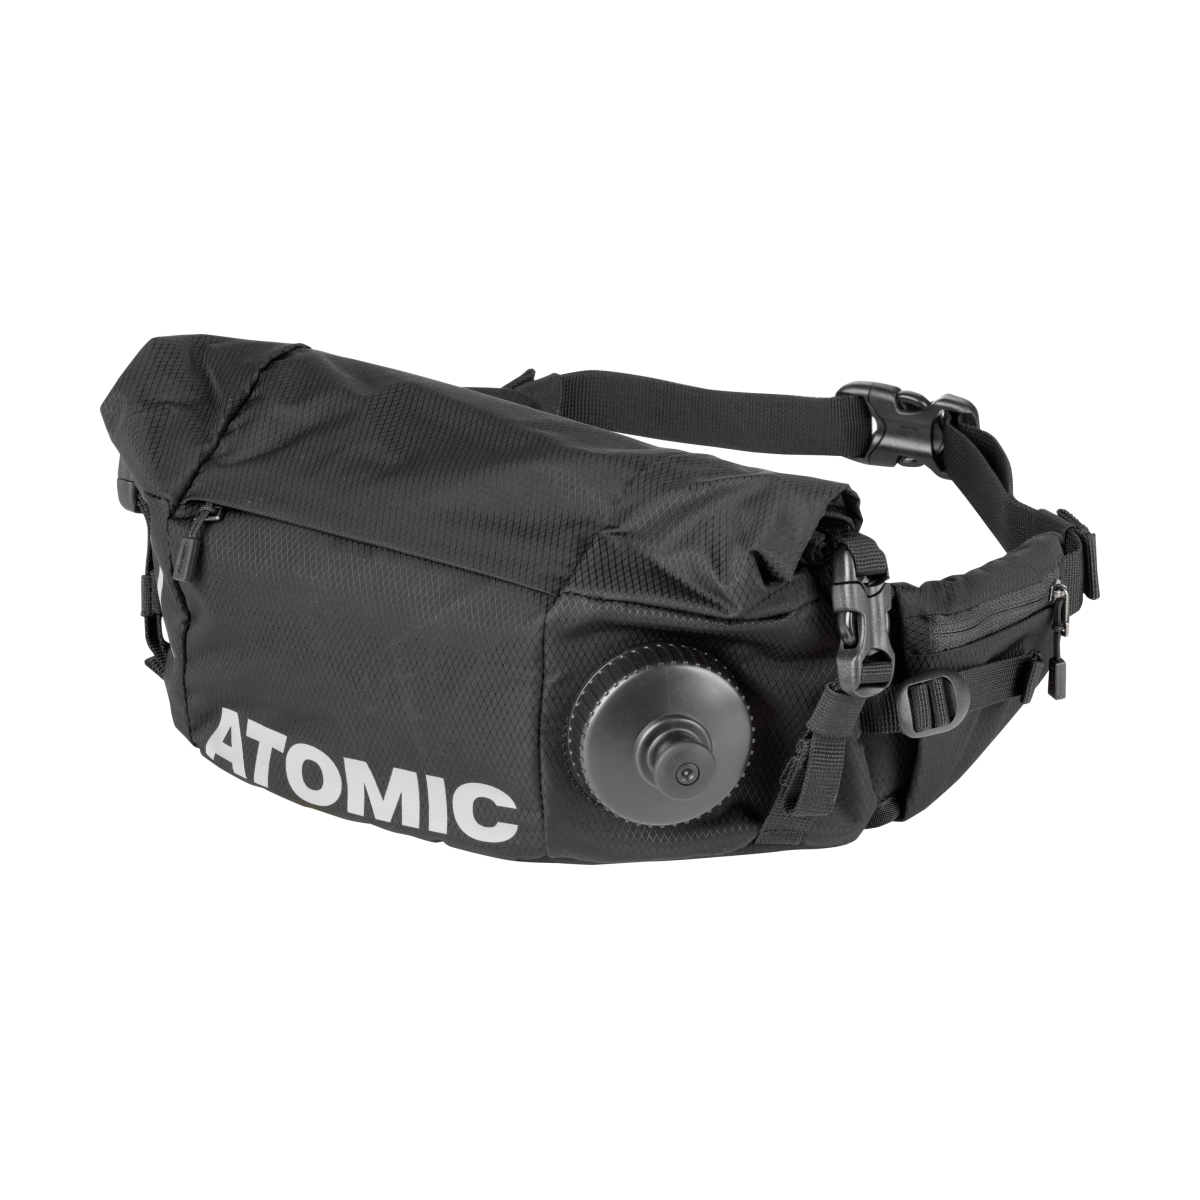 ATOMIC NORDIC THERMO BELT REDSTER belt bag